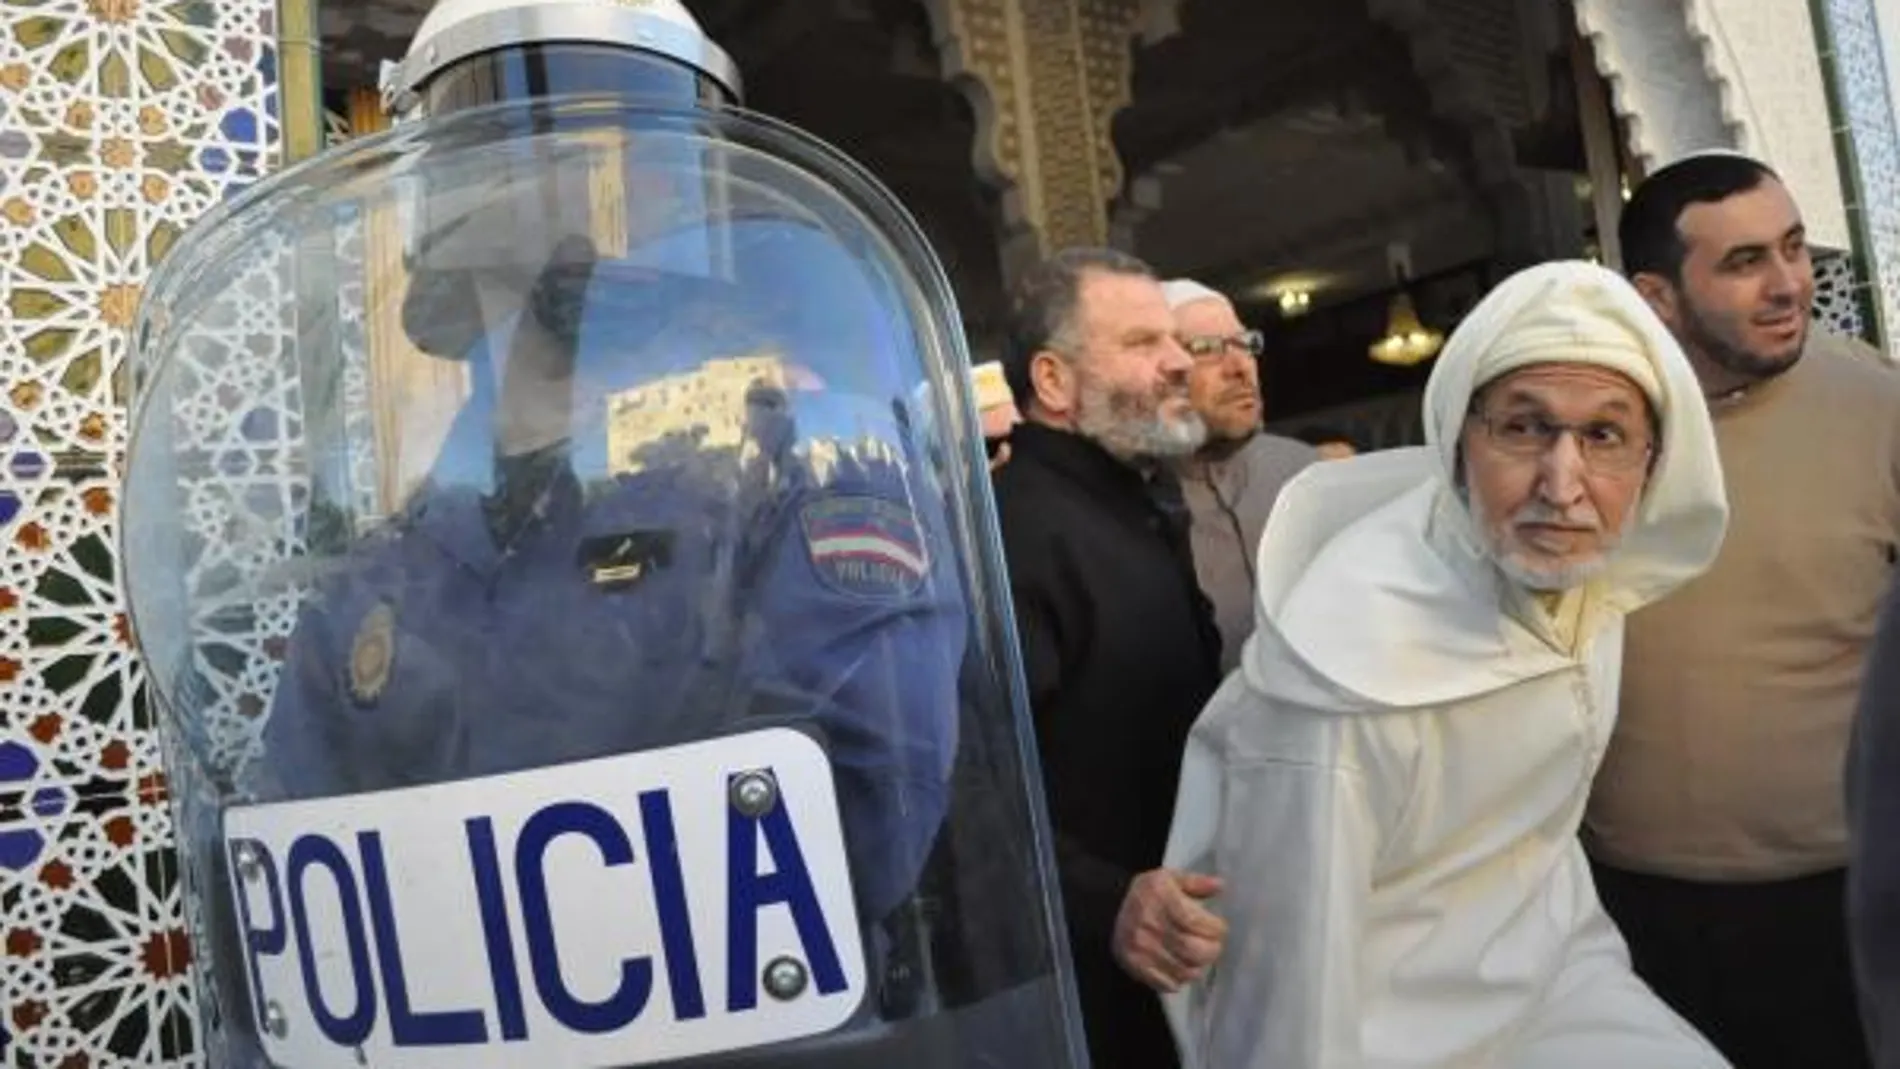 Ceuta, la difícil convicencia con Marruecos